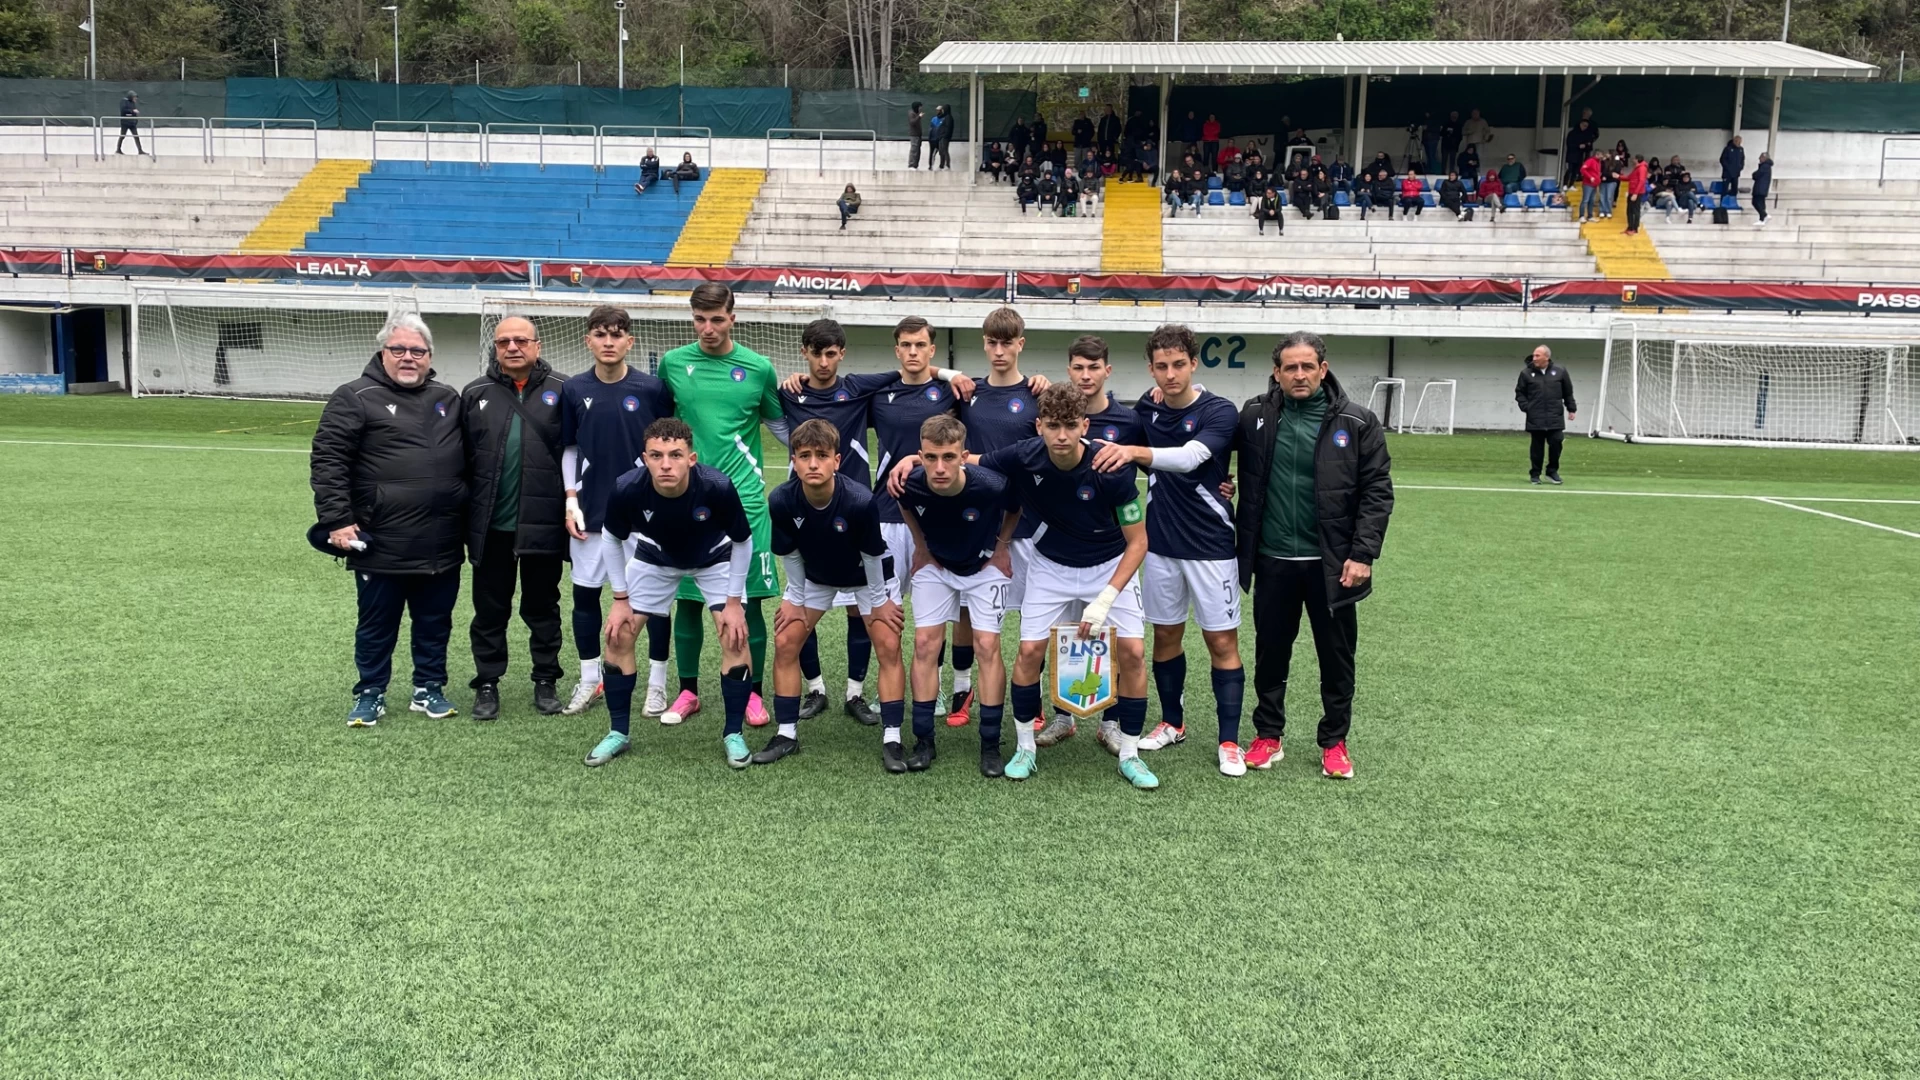 Torneo delle regioni, un pareggio per l’Under 17 contro l’Abruzzo. I giovanissimi molisani sconfitti all’esordio dall’Abruzzo.